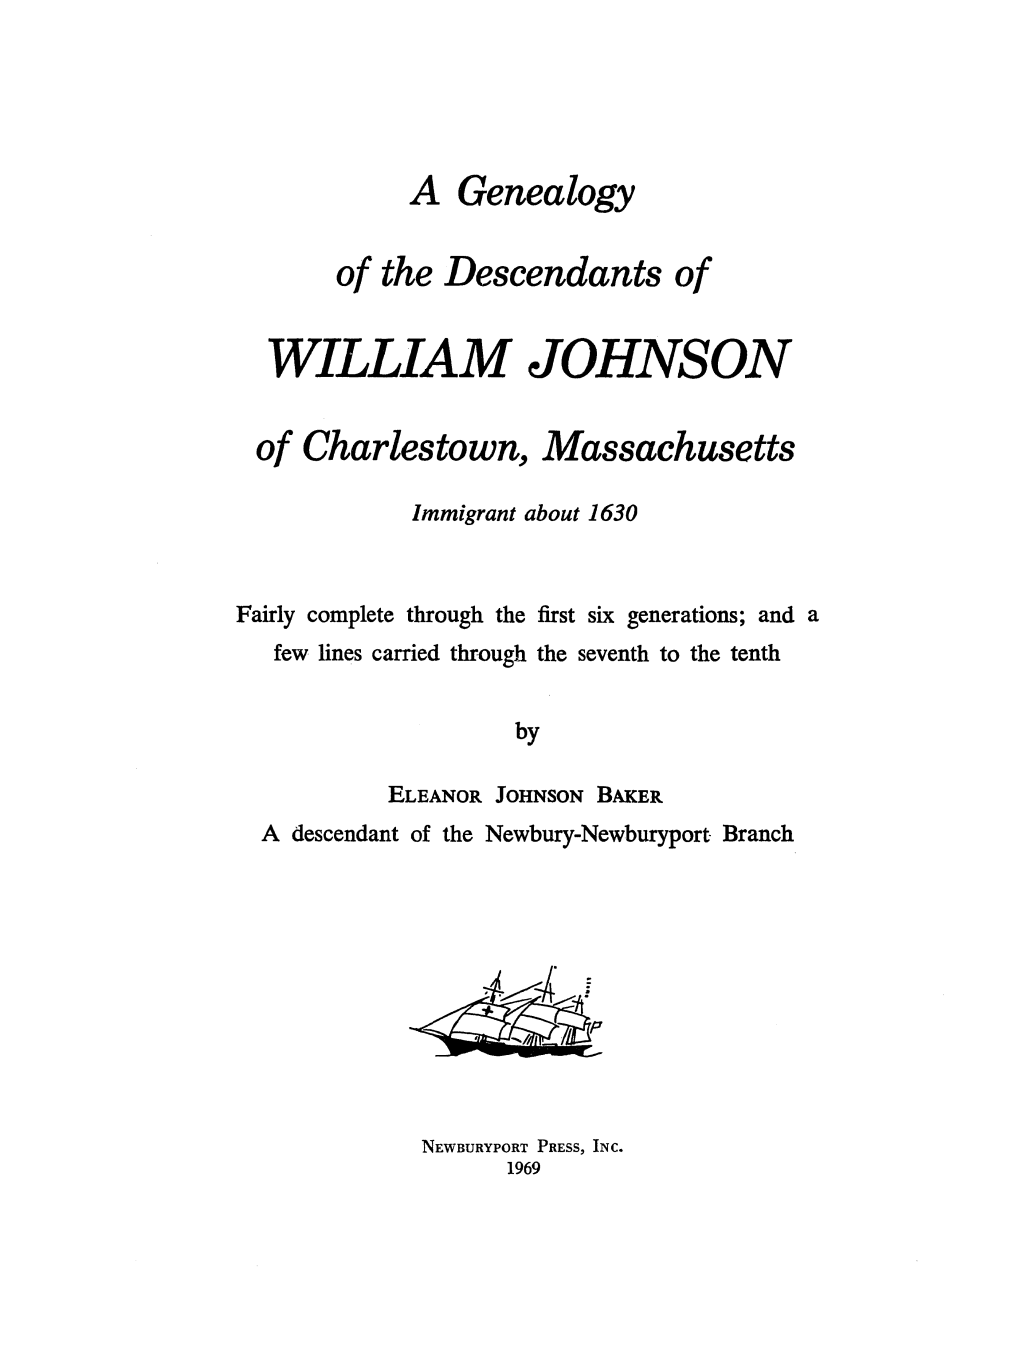 WILLIAM JOHNSON of Charlestown, Massachusetts